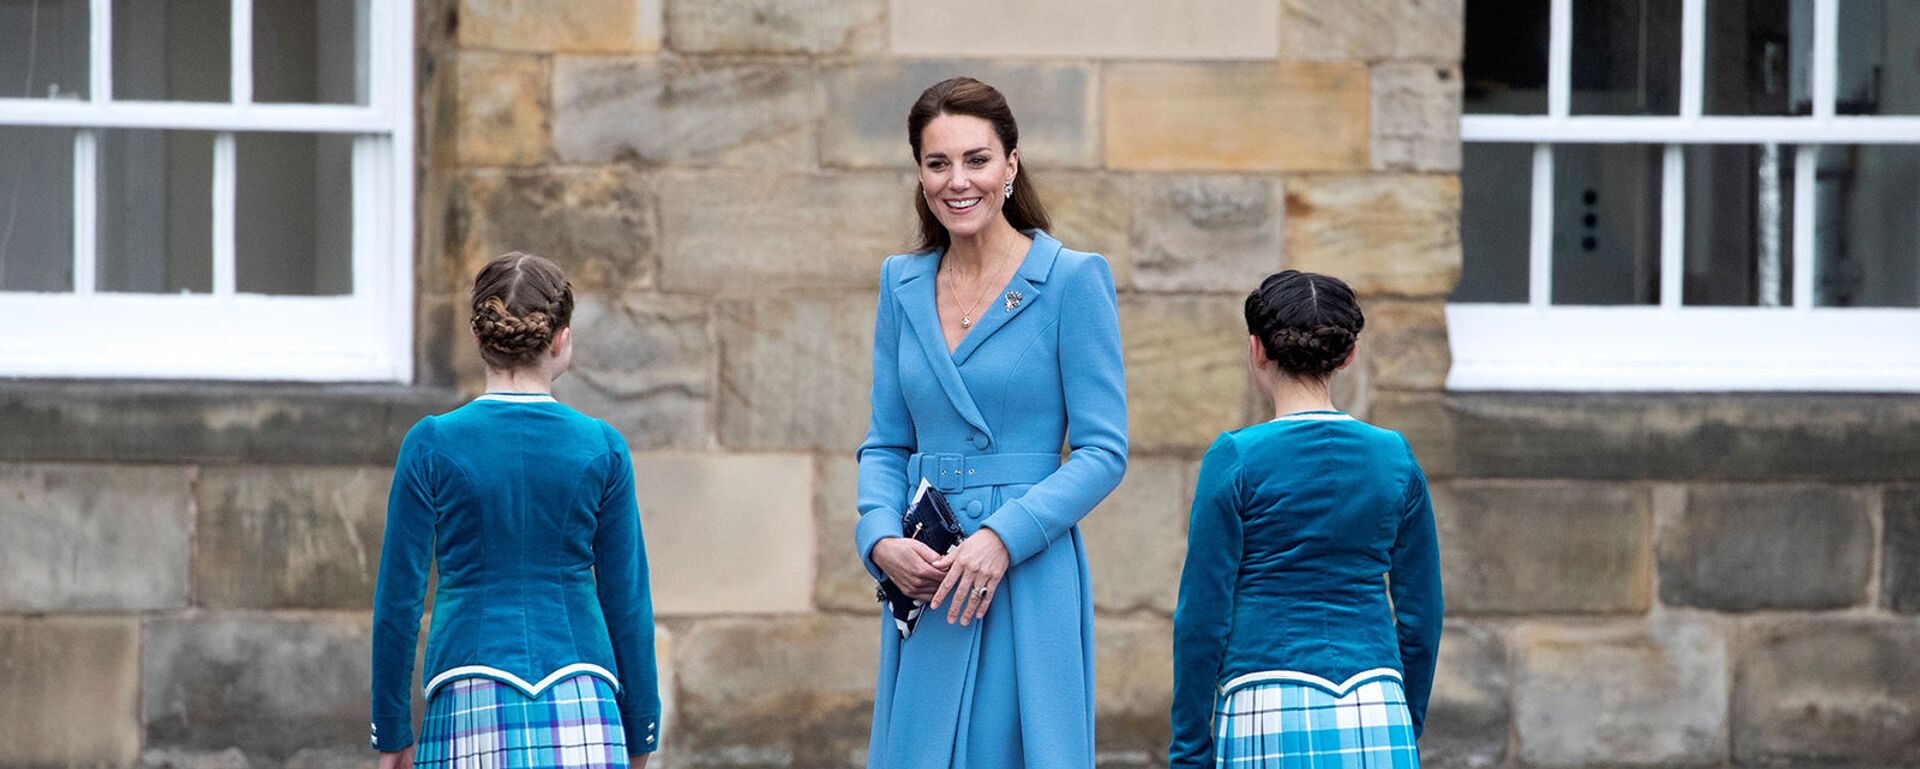 Кейт Мидлтон, герцогиня Кембриджская, встречает шотландских танцоров во дворце Холирудхаус (27 мая 2021). Эдинбург - Sputnik Армения, 1920, 28.05.2021